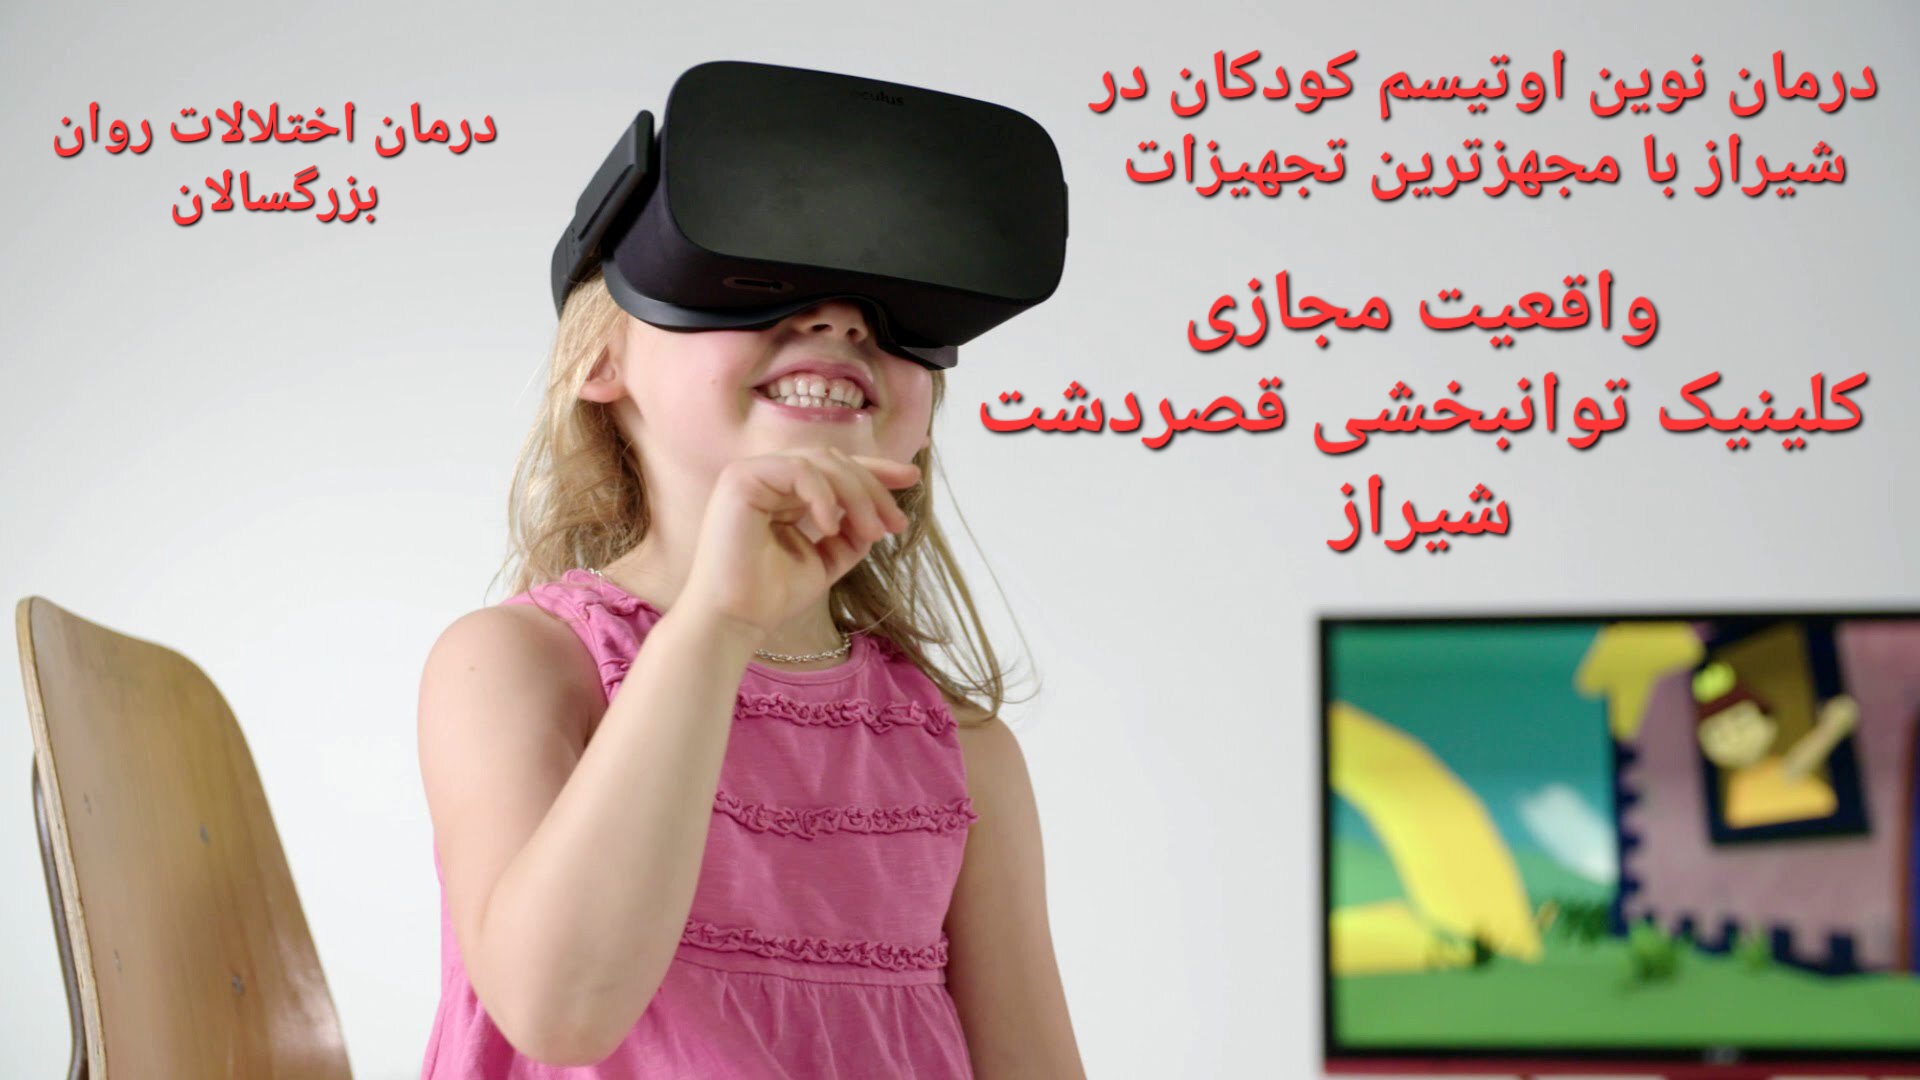 واقعیت مجازی شیراز_درمان نوین اختلالات پردازشی اتیسم کودکان و فواید VR شیراز